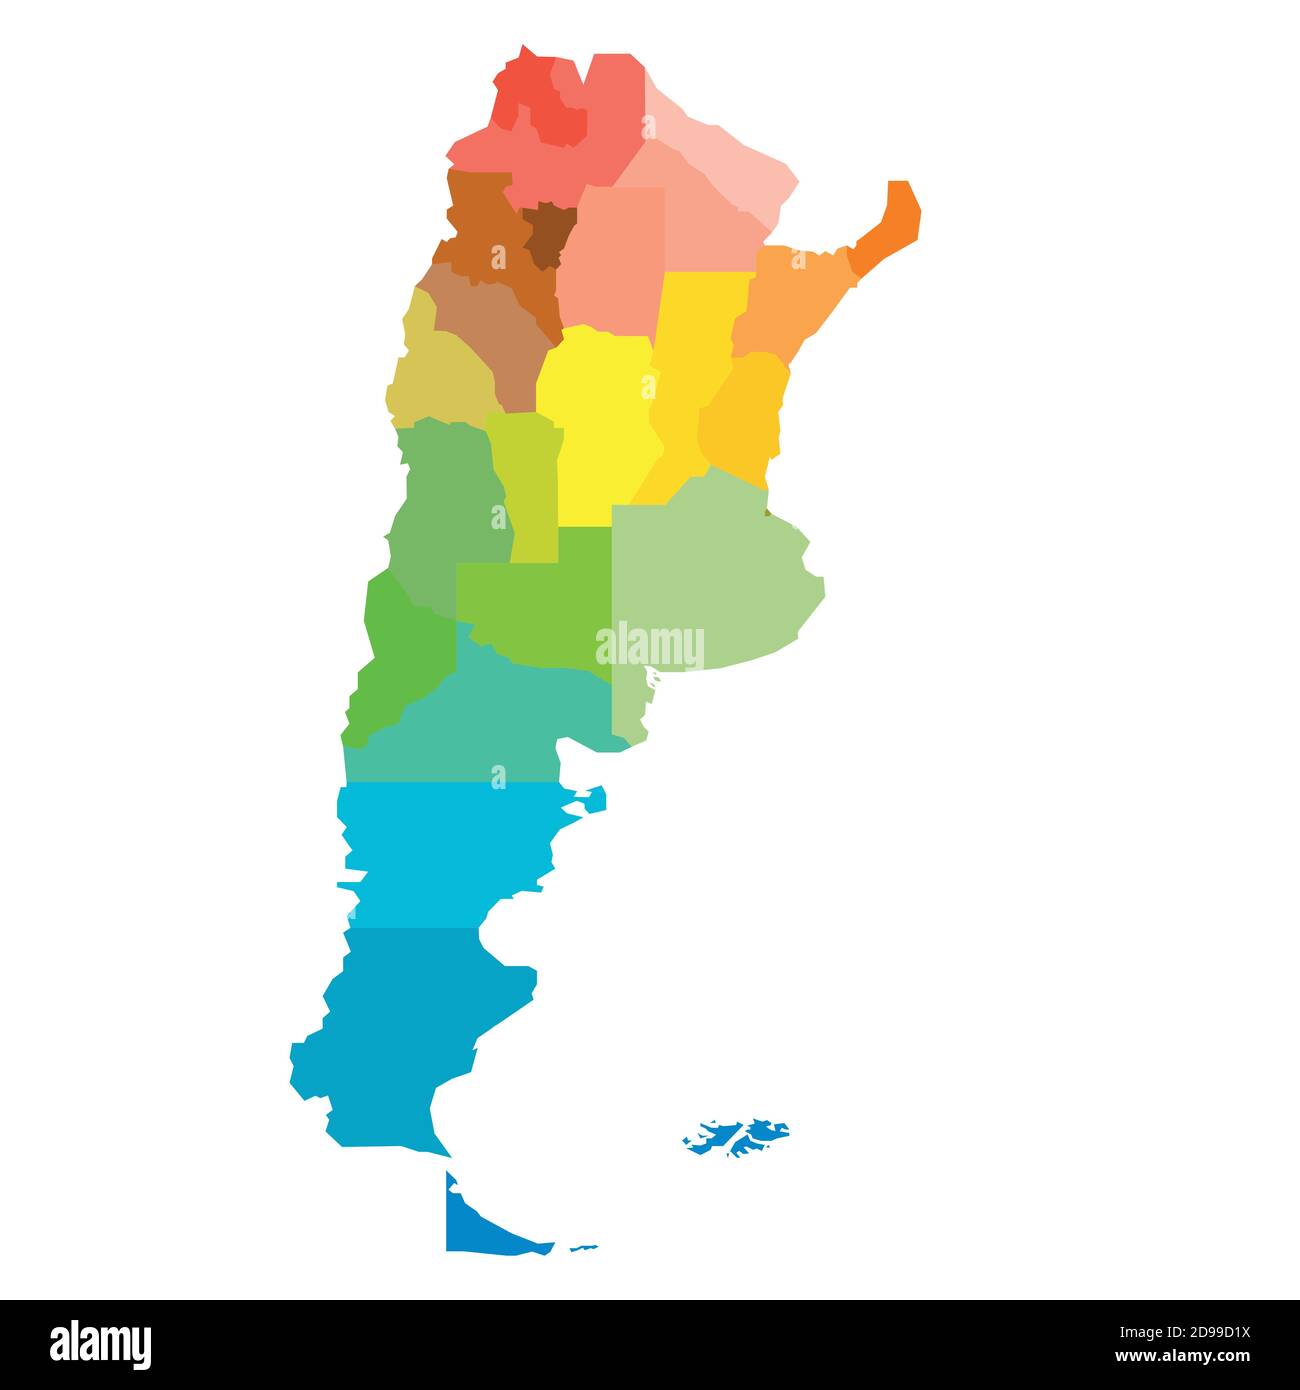 Argentina Map. Cities, Regions. Vector Stock Illustration - Illustration of  politics, symbol: 180156496